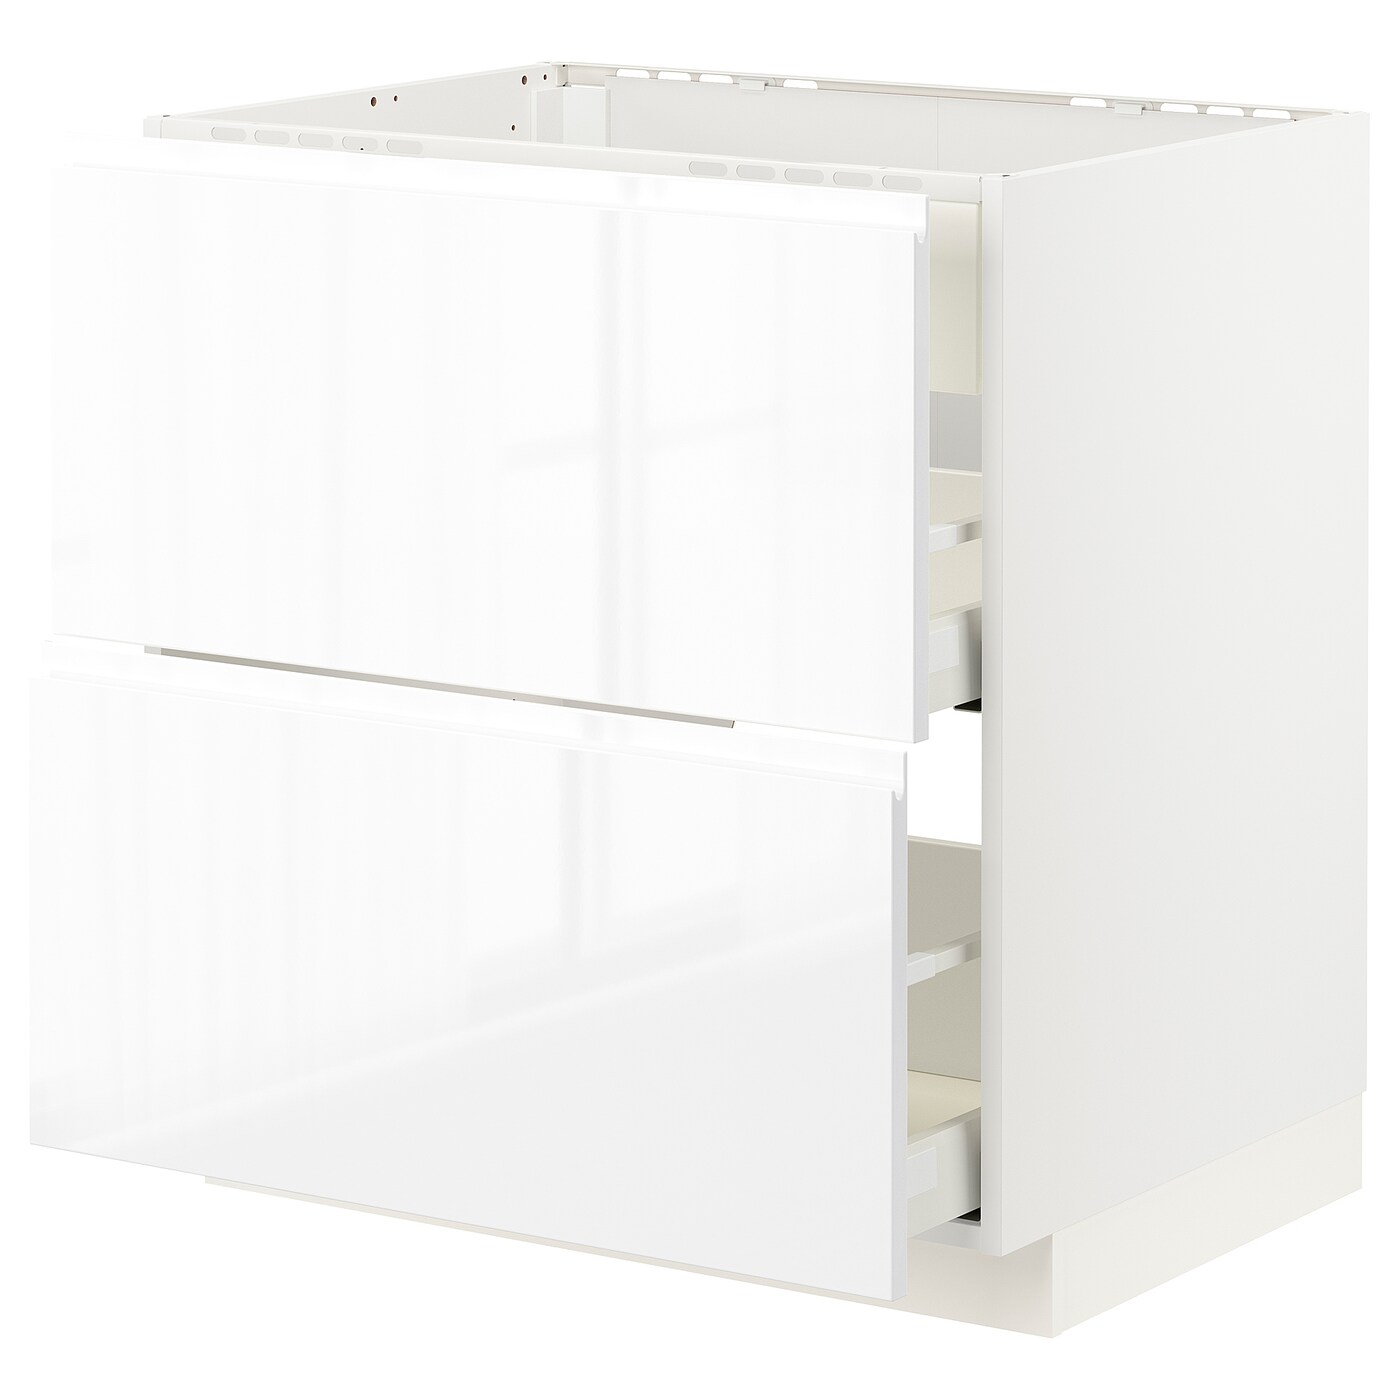 Напольный шкаф - IKEA METOD MAXIMERA, 88x62x80см, белый, МЕТОД МАКСИМЕРА ИКЕА